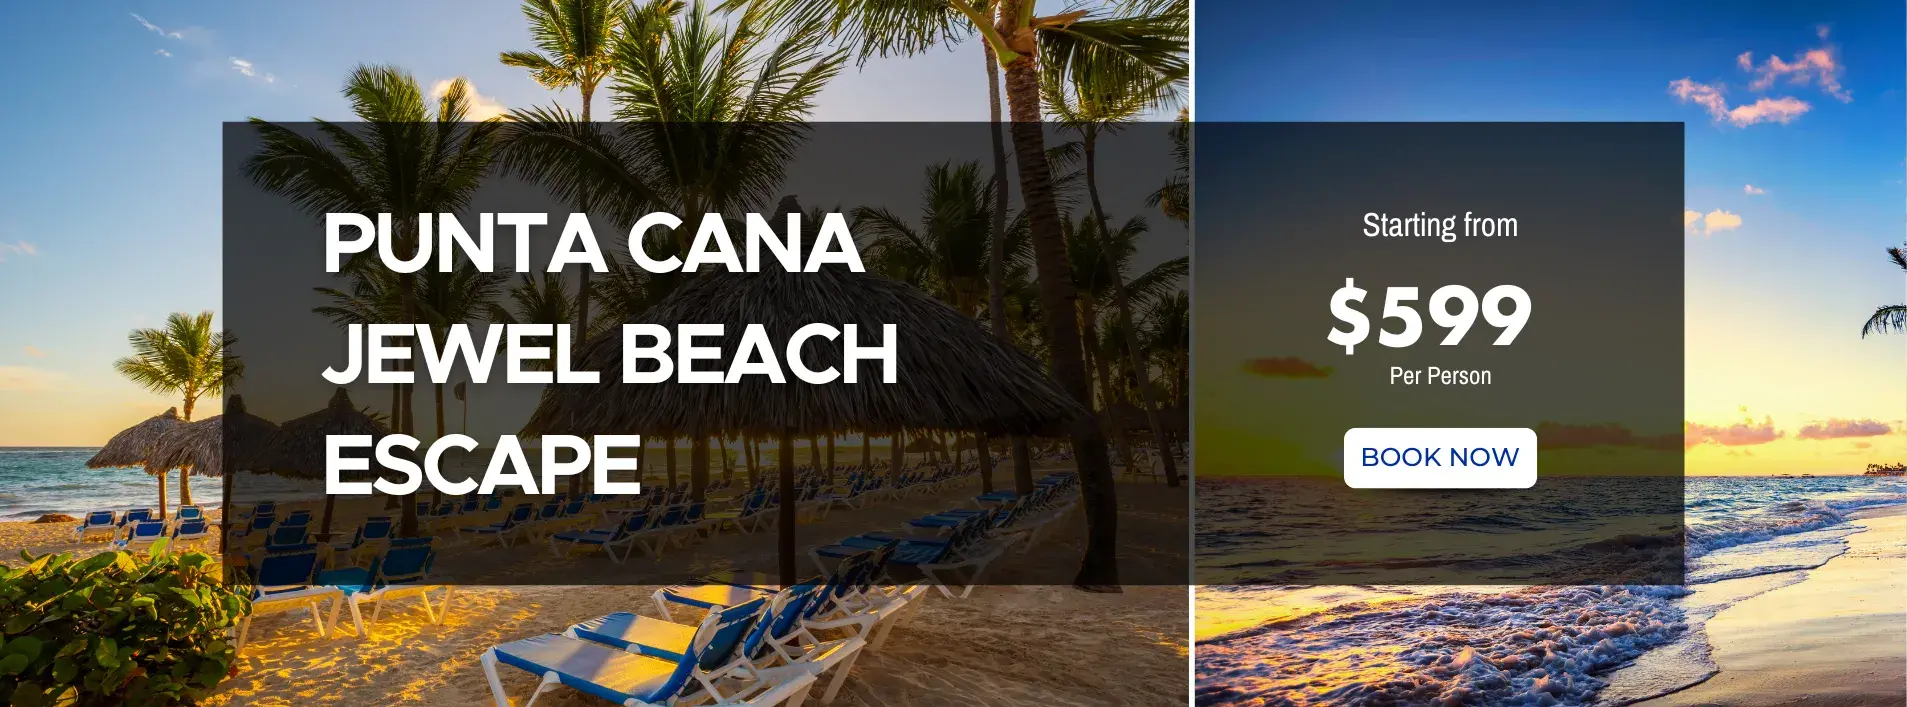 Punta Cana Jewel Beach Escape W/Air